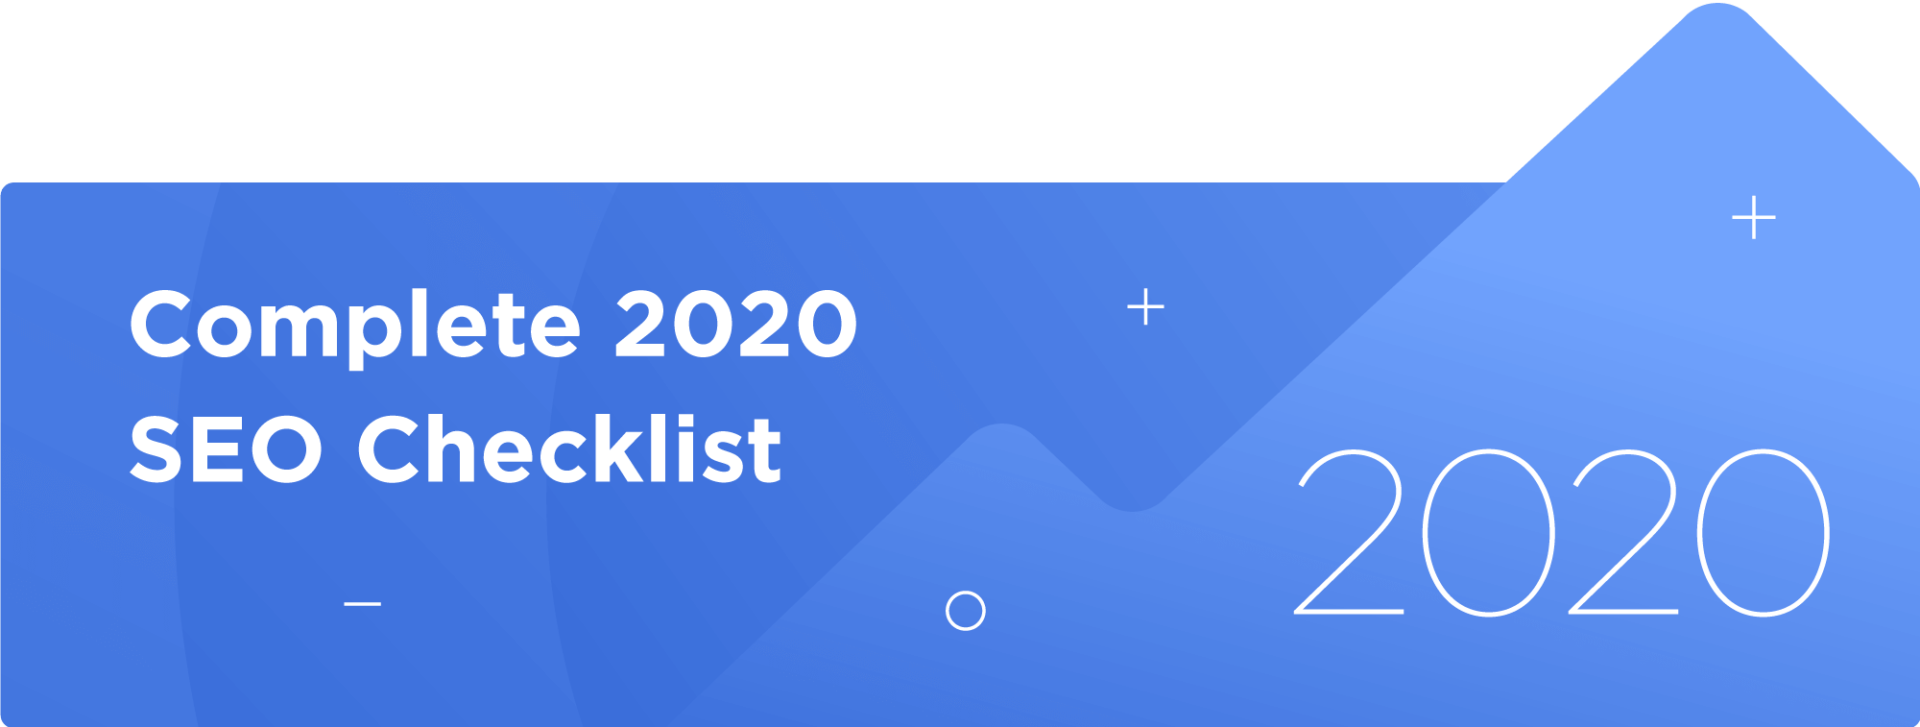 seo checklist 2020